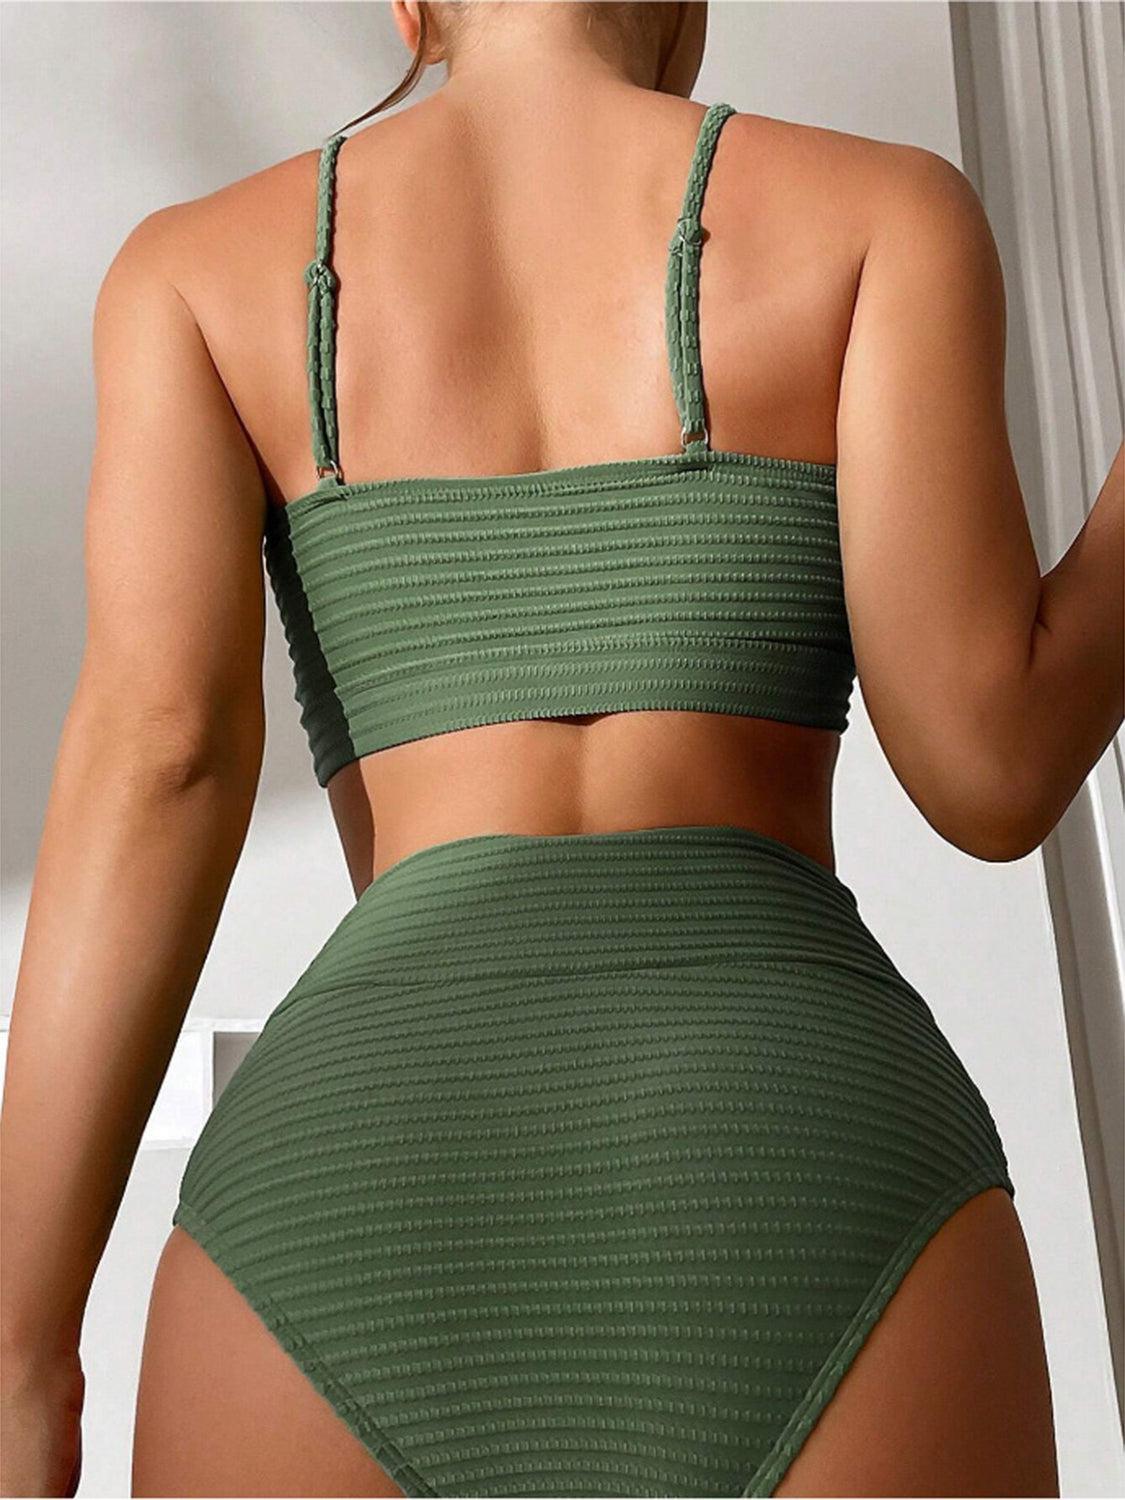 a woman in a green bikini top and bottom